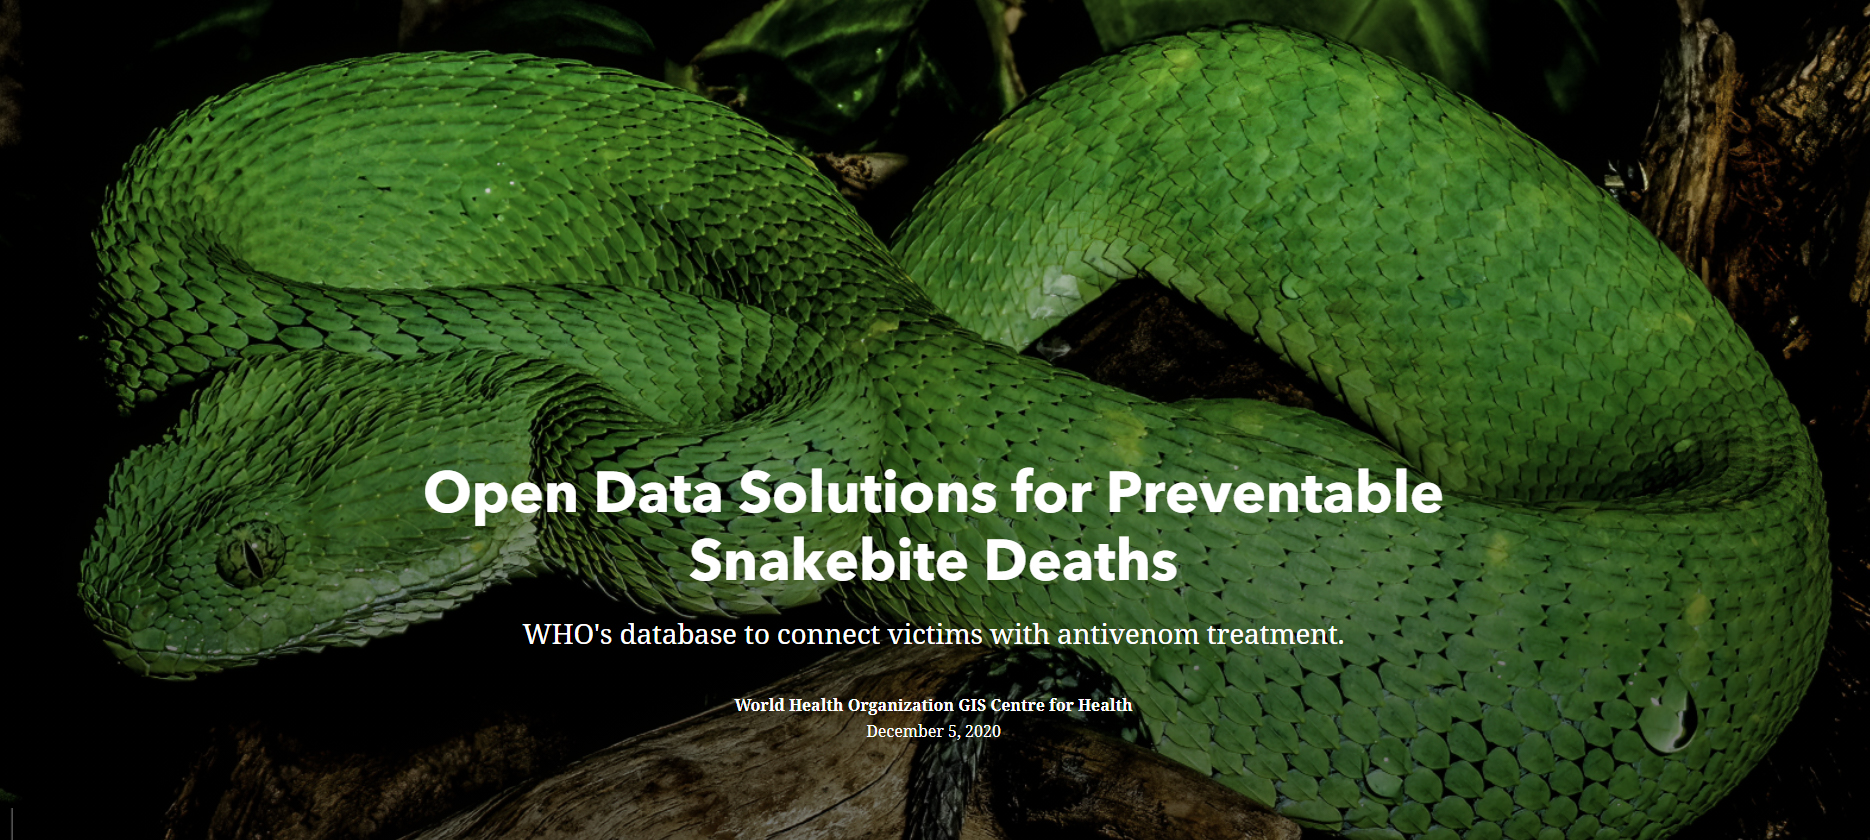 Open Data Solutions for Preventable Snakebite Deaths